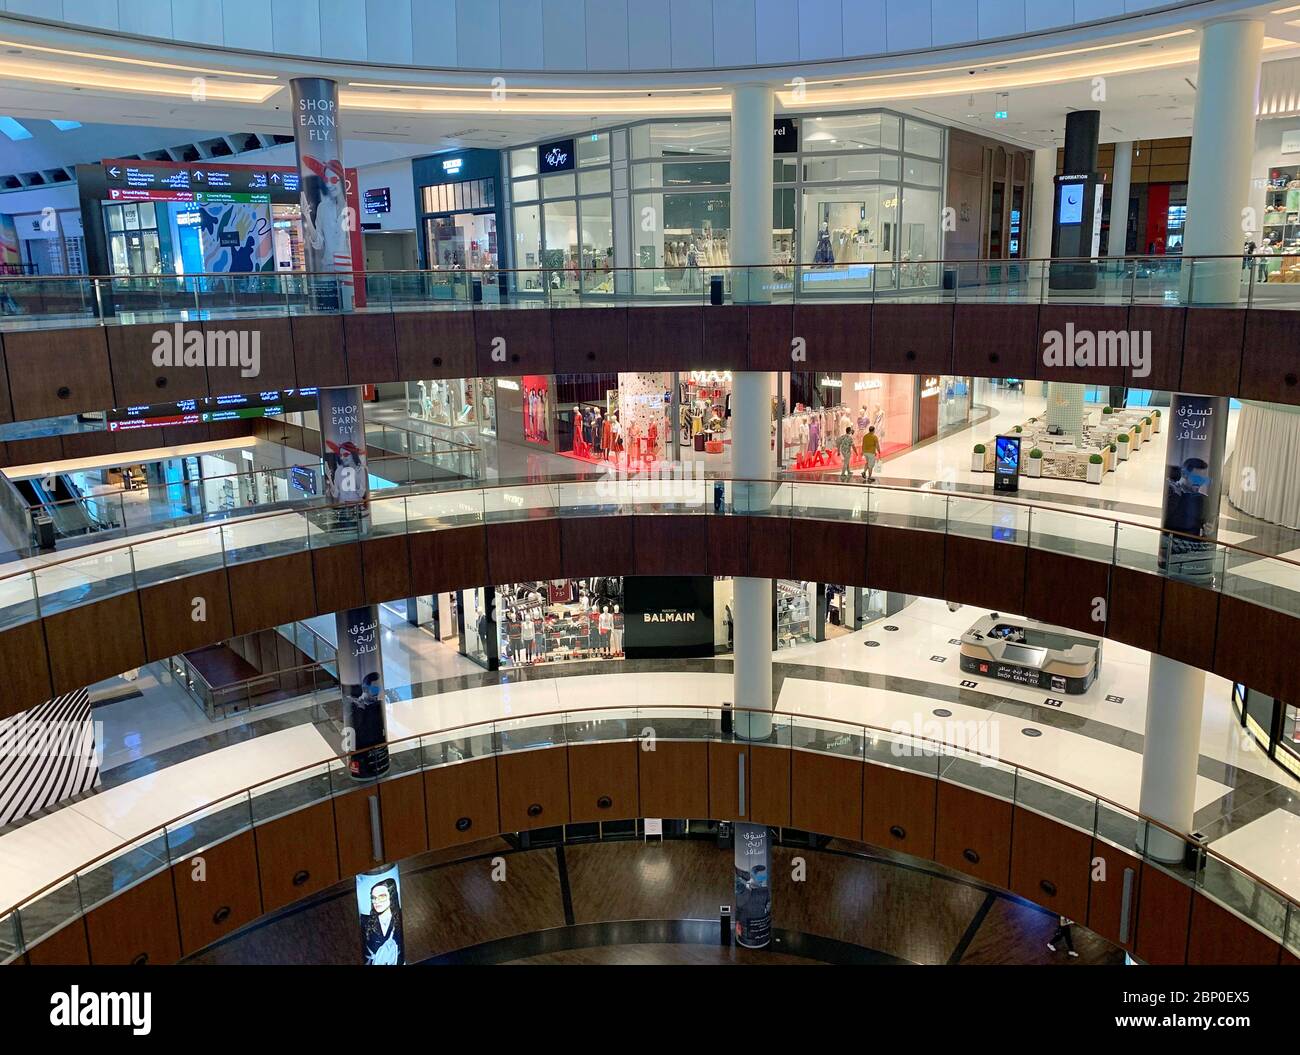 Dubaï / Émirats Arabes Unis - 13 mai 2020 : le plus grand centre commercial du monde. Vider le centre commercial de Dubaï pendant la quarantaine. Vue de dessus. Banque D'Images